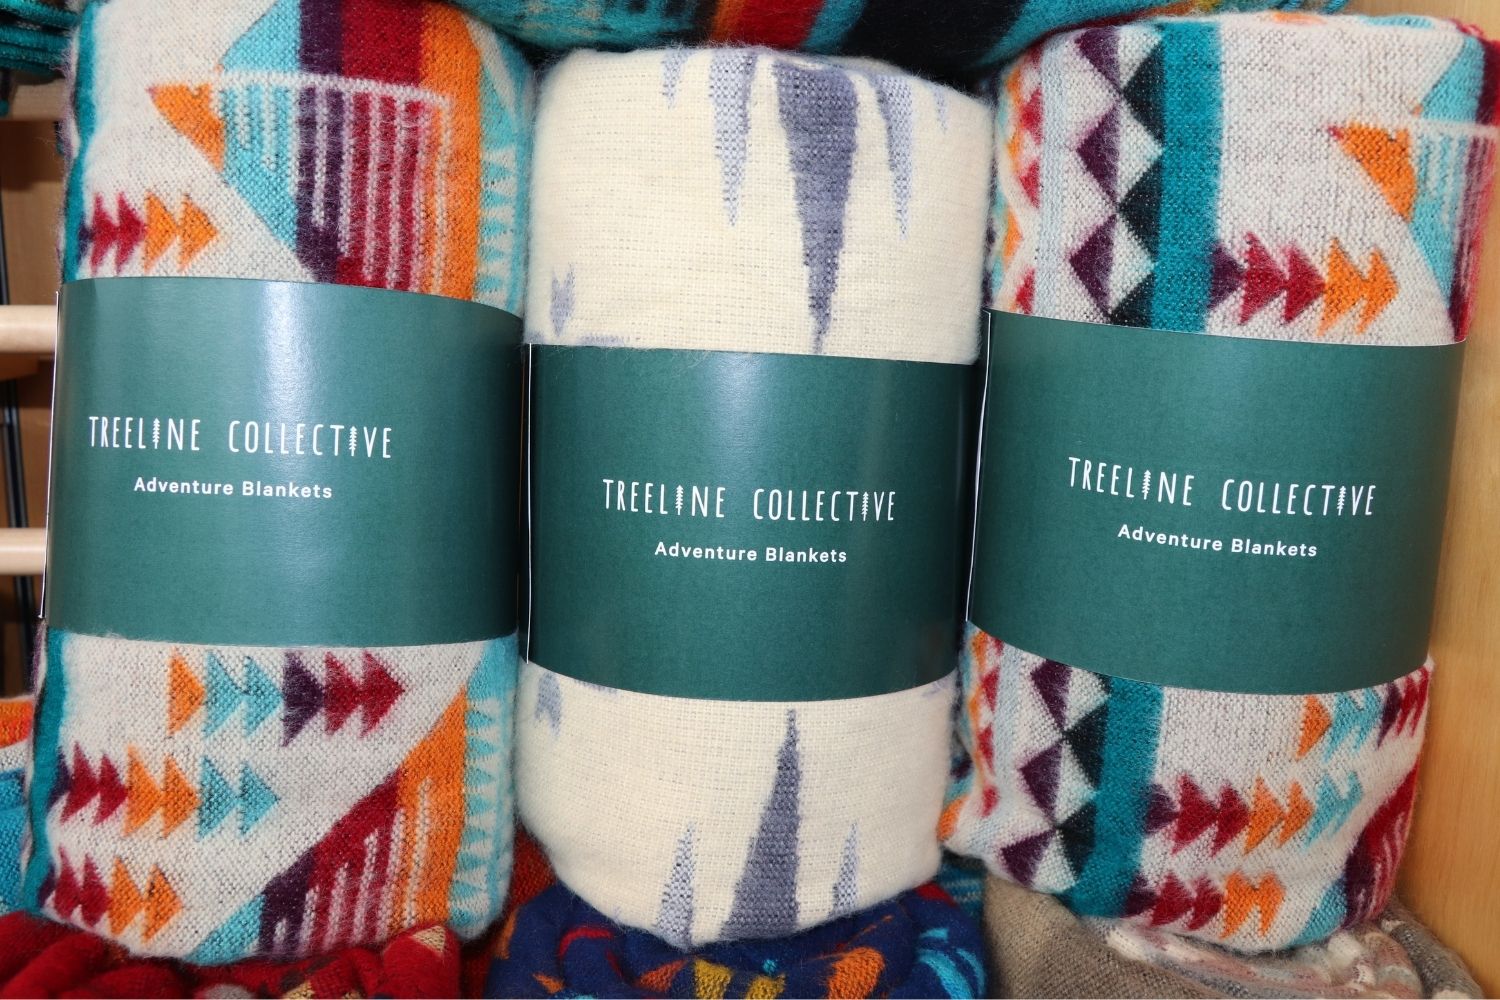 Treeline Collective blankets